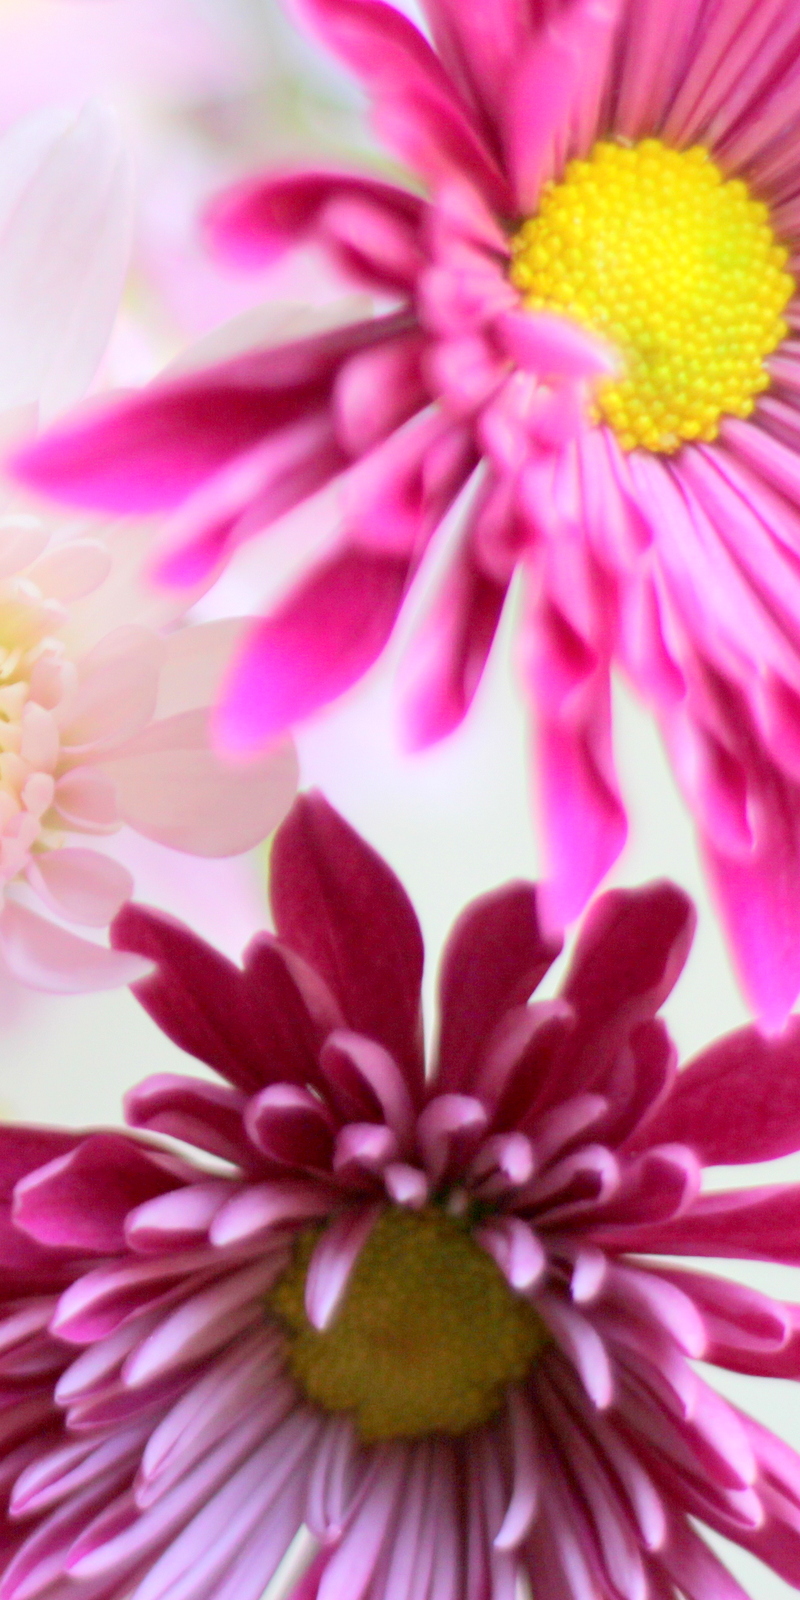 פרח דליה Dahlia בלוג עיצוב מיס גרות צילום לירון גונן (1)